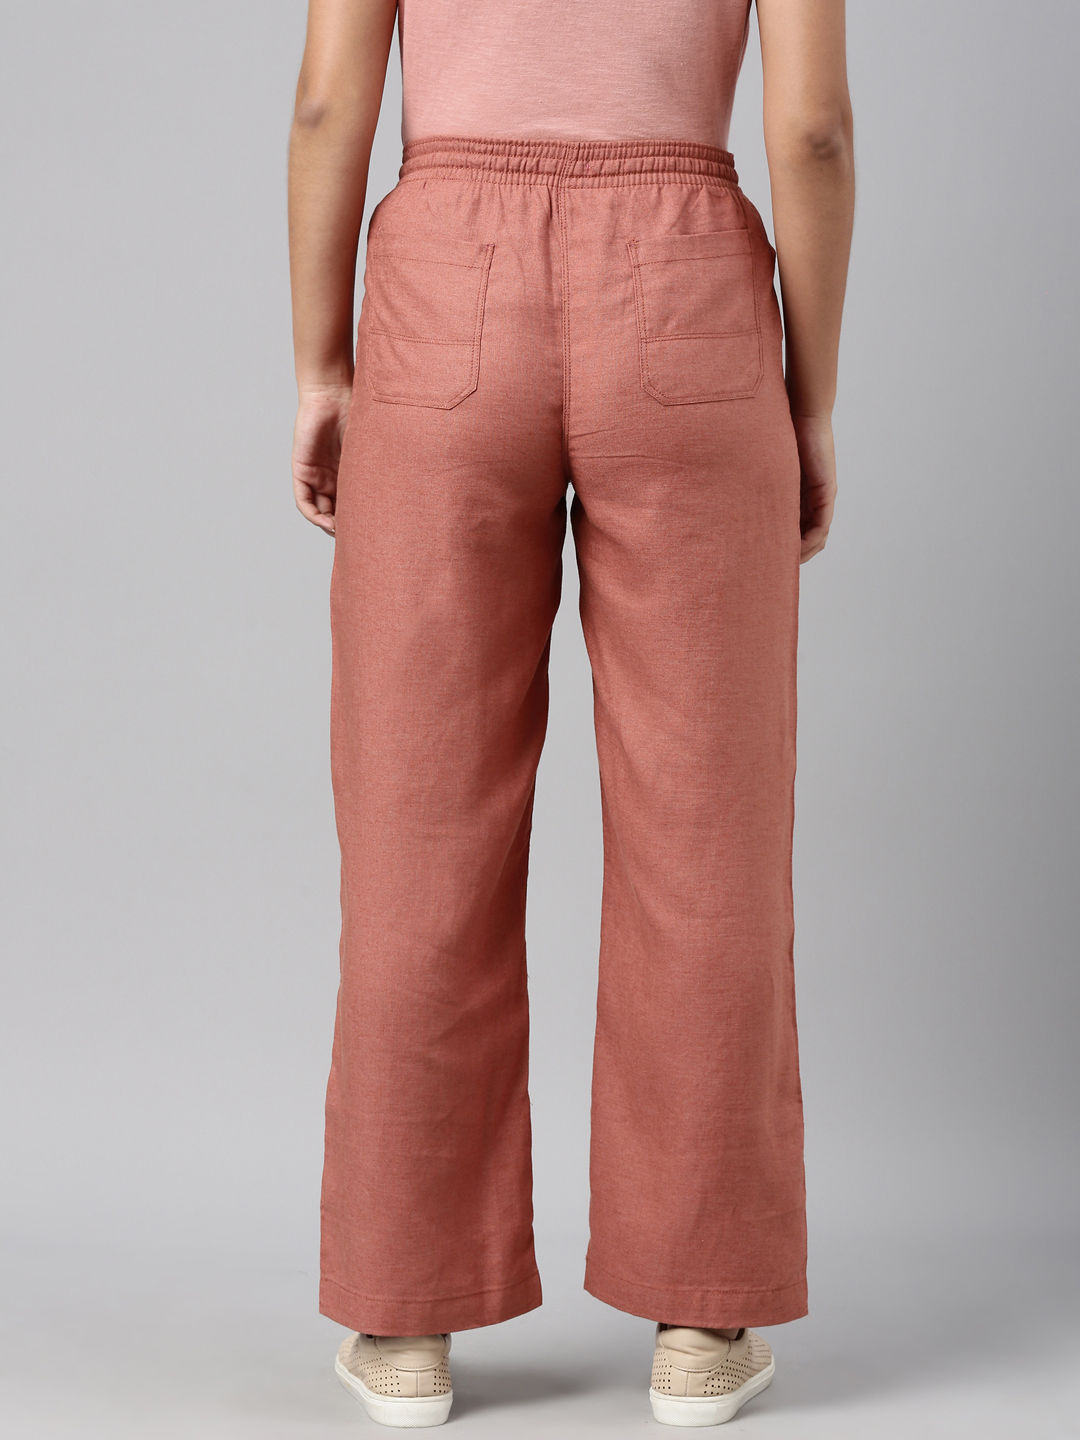 CottonLinen Lookline Cotton Twill Women Plain Cargo Pant Size 2836